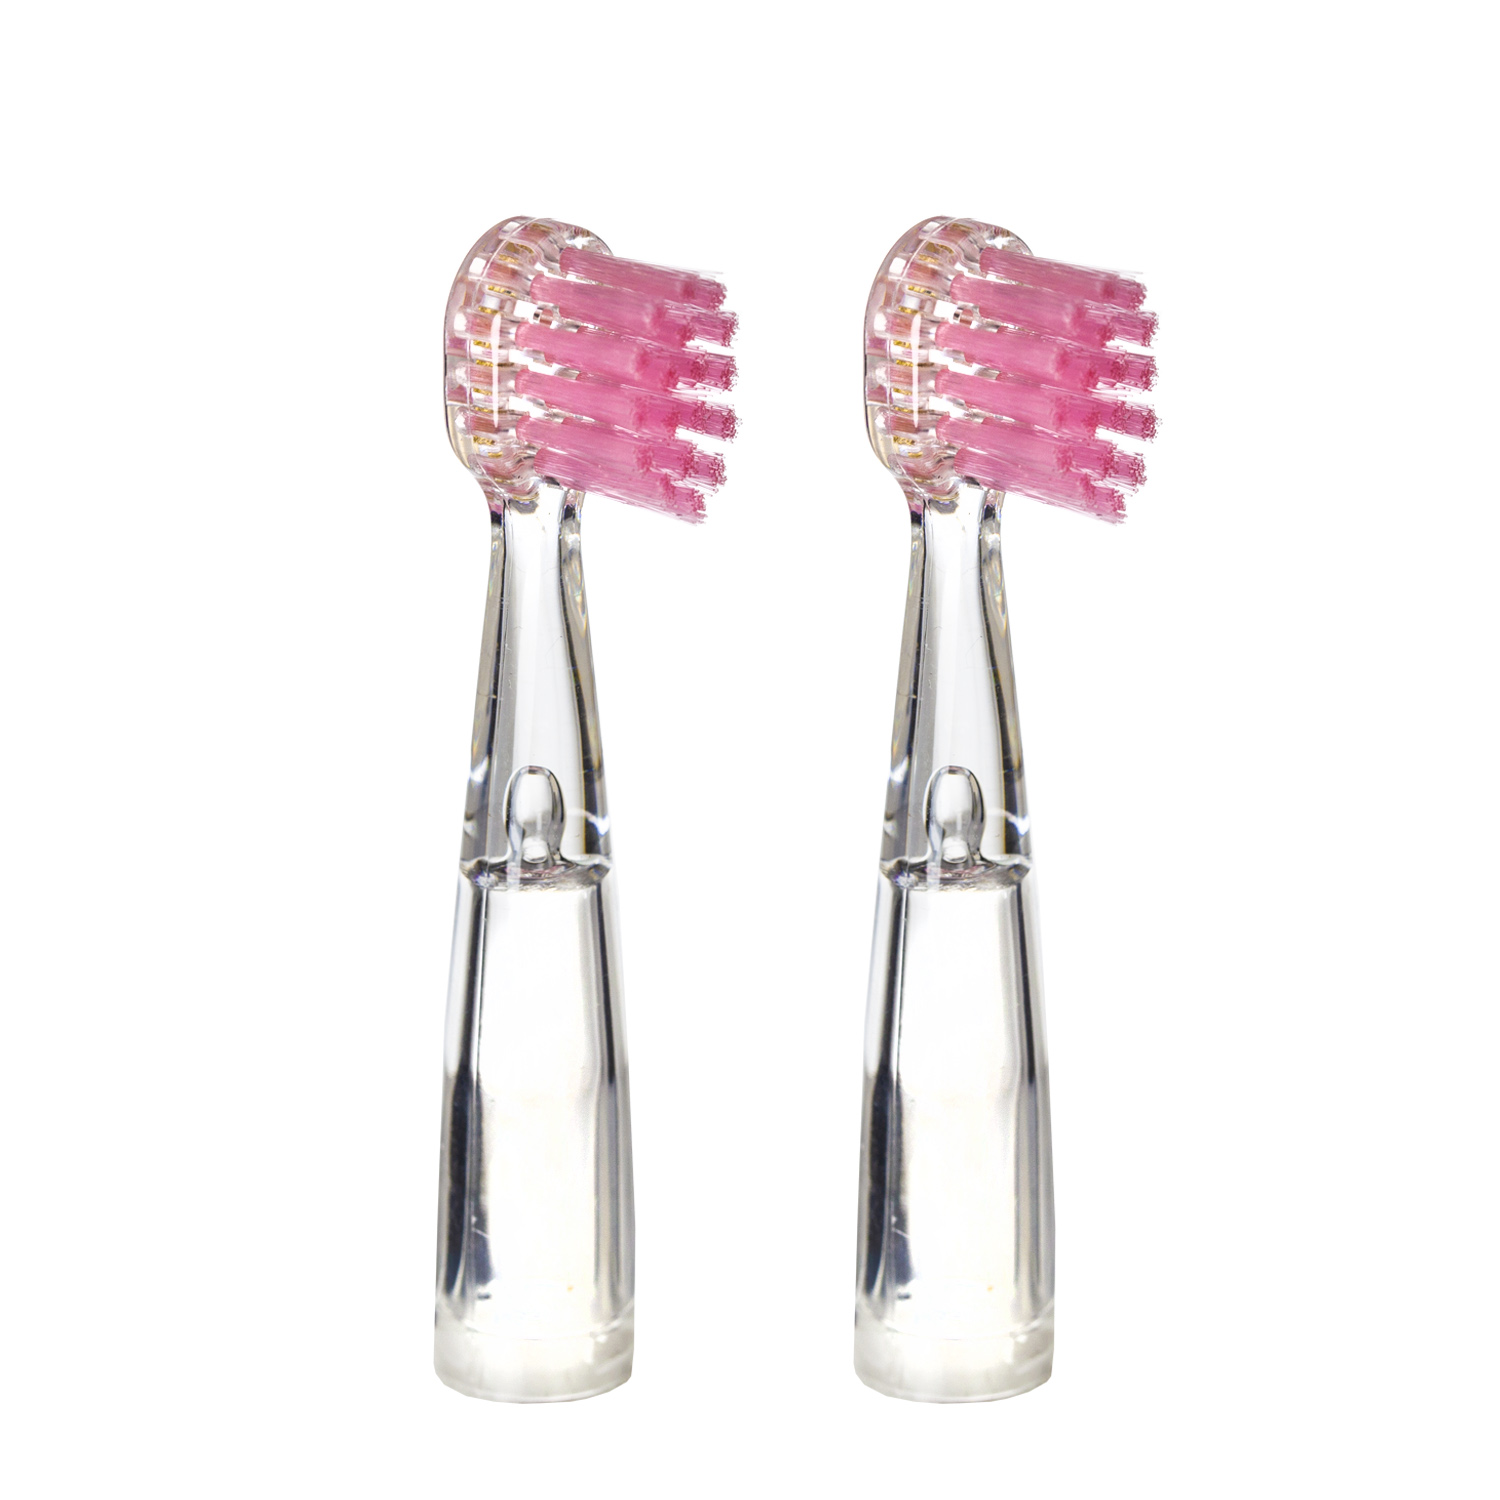 Насадка для детской электрической зубной щетки Revyline RL 025, розовая, 2 шт., 6171 насадка revyline rl 050 kids белая салатовая 2шт